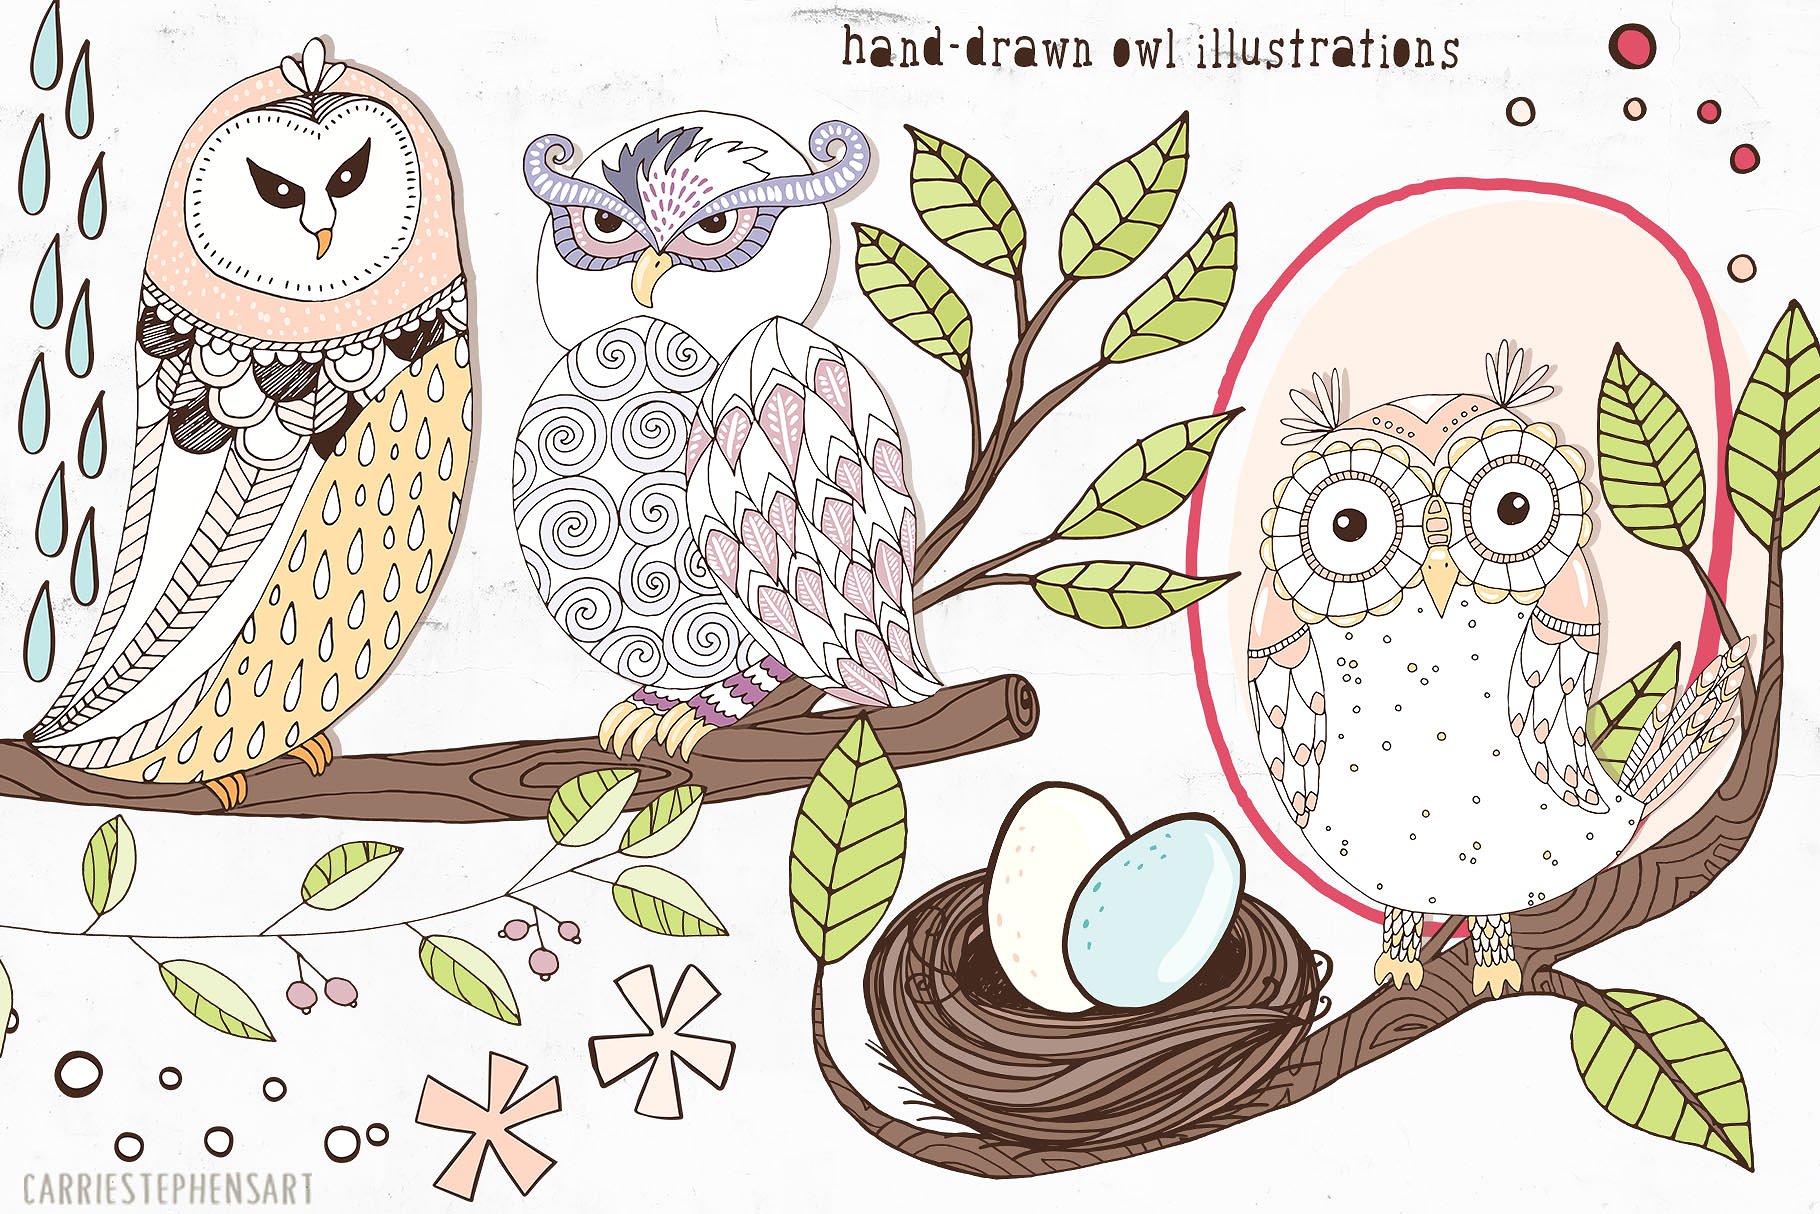 可爱猫头鹰矢量剪切画素材 Cute Owl Graphics Set插图(1)